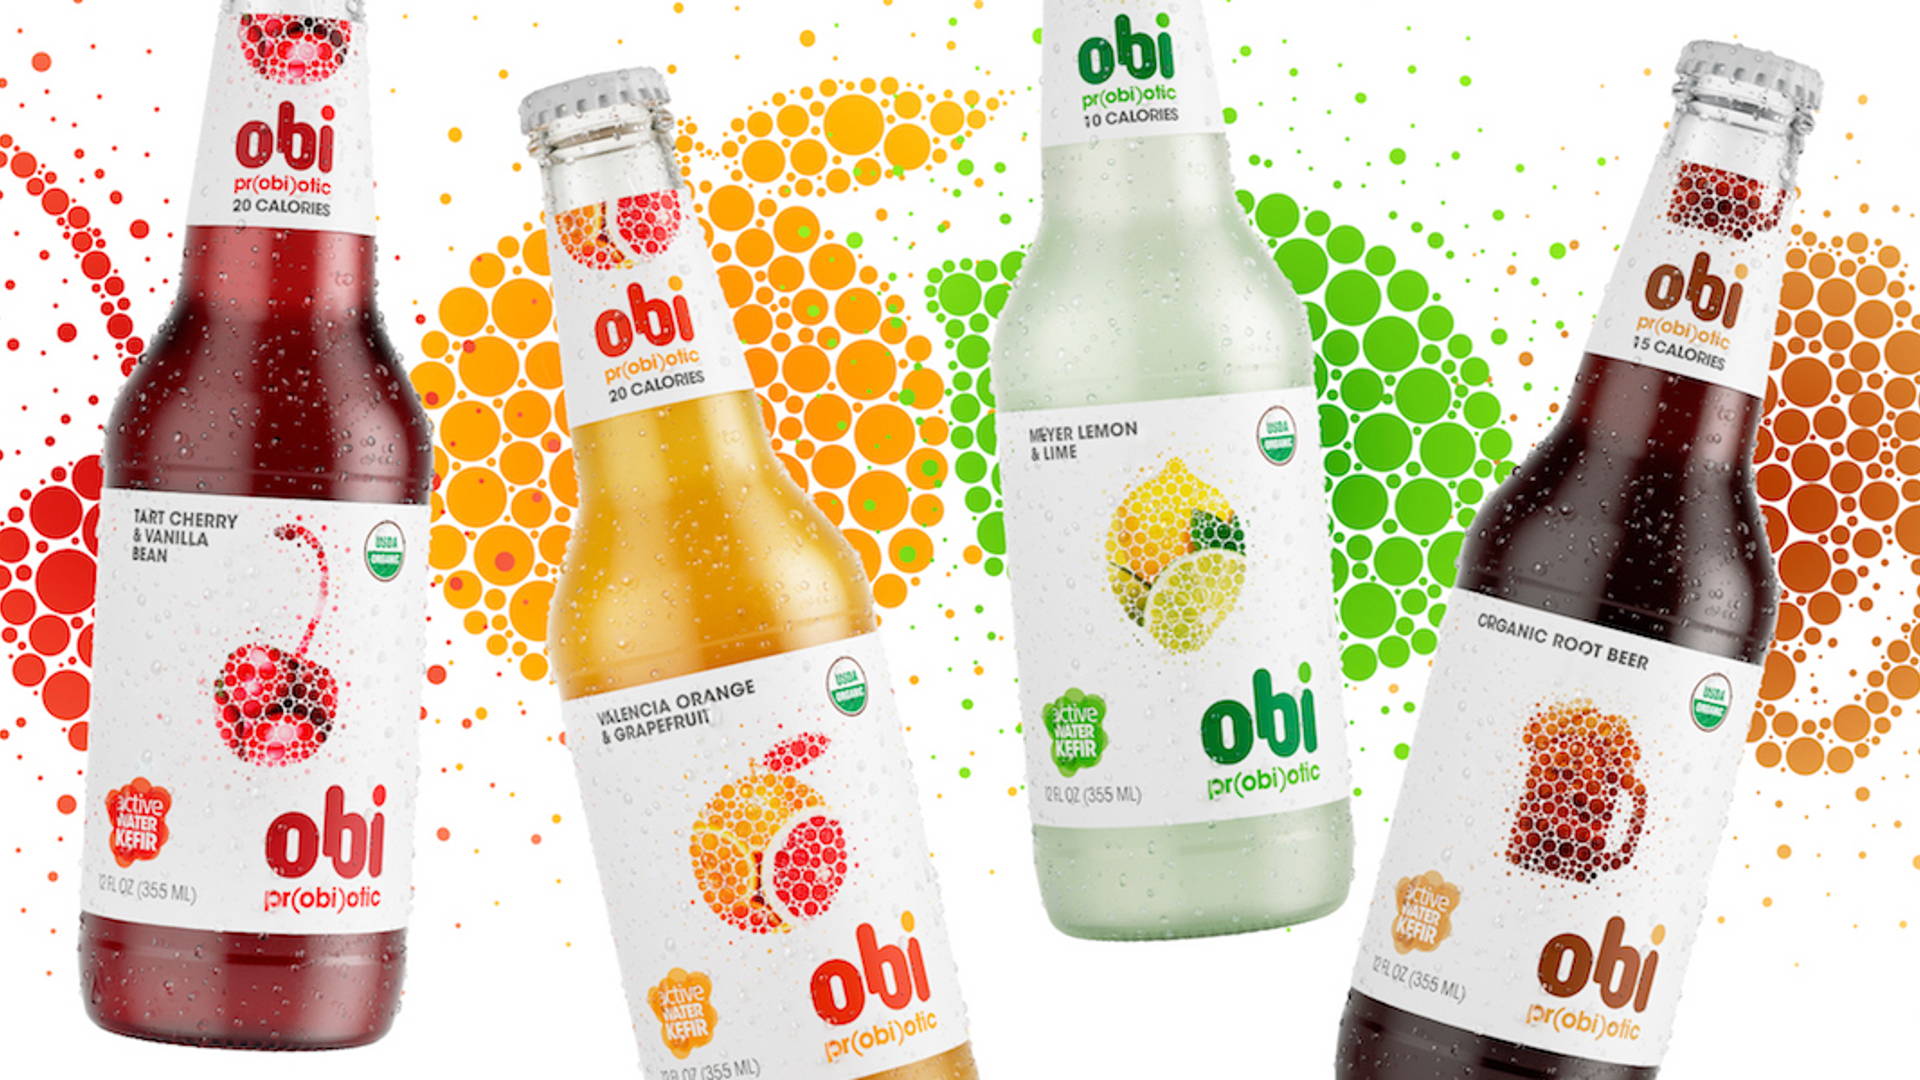 Featured image for Obi Pr(obi)otic Soda